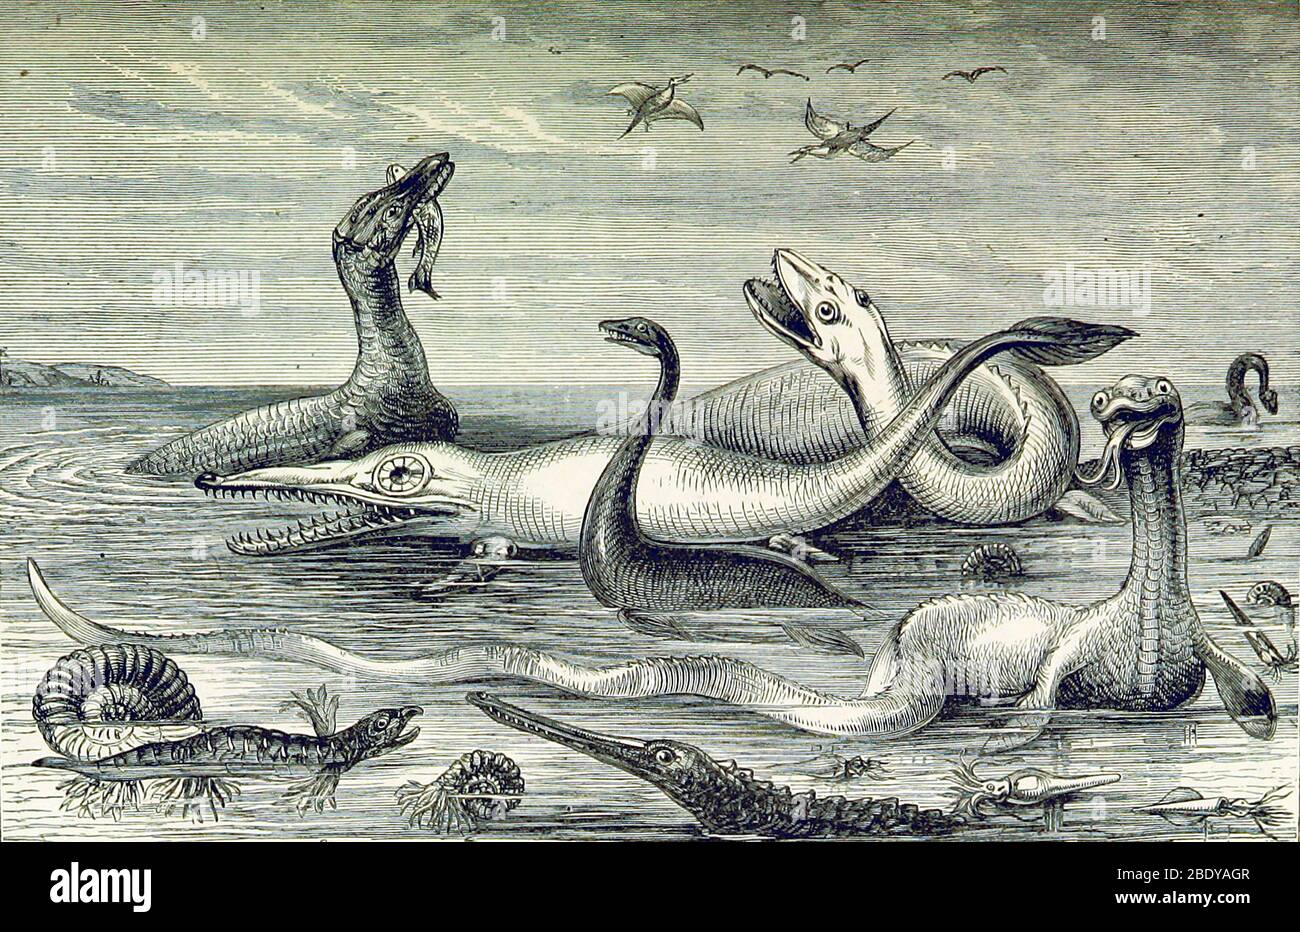 Aquatic Life, Mesozoic Era, Illustration Stock Photo